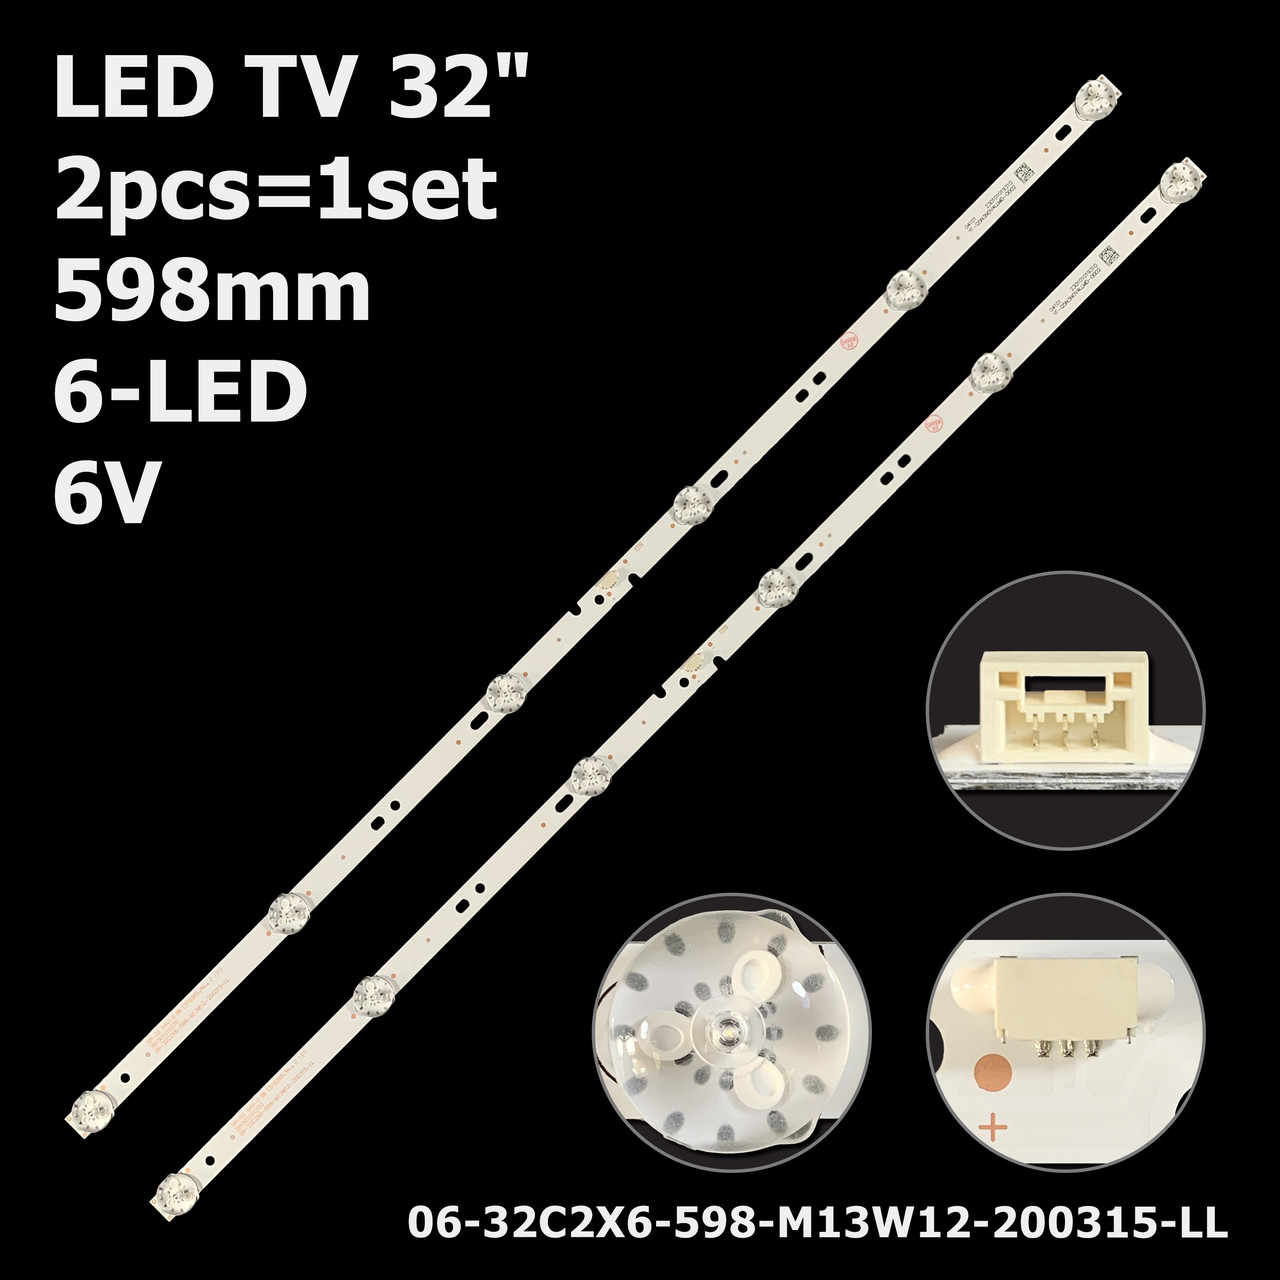 LED підсвітка TV 32" 06-32C2X6-598-M13W12-190130 06-32C2X6-598-M13W12-200315-LL 32DH3004 2шт.